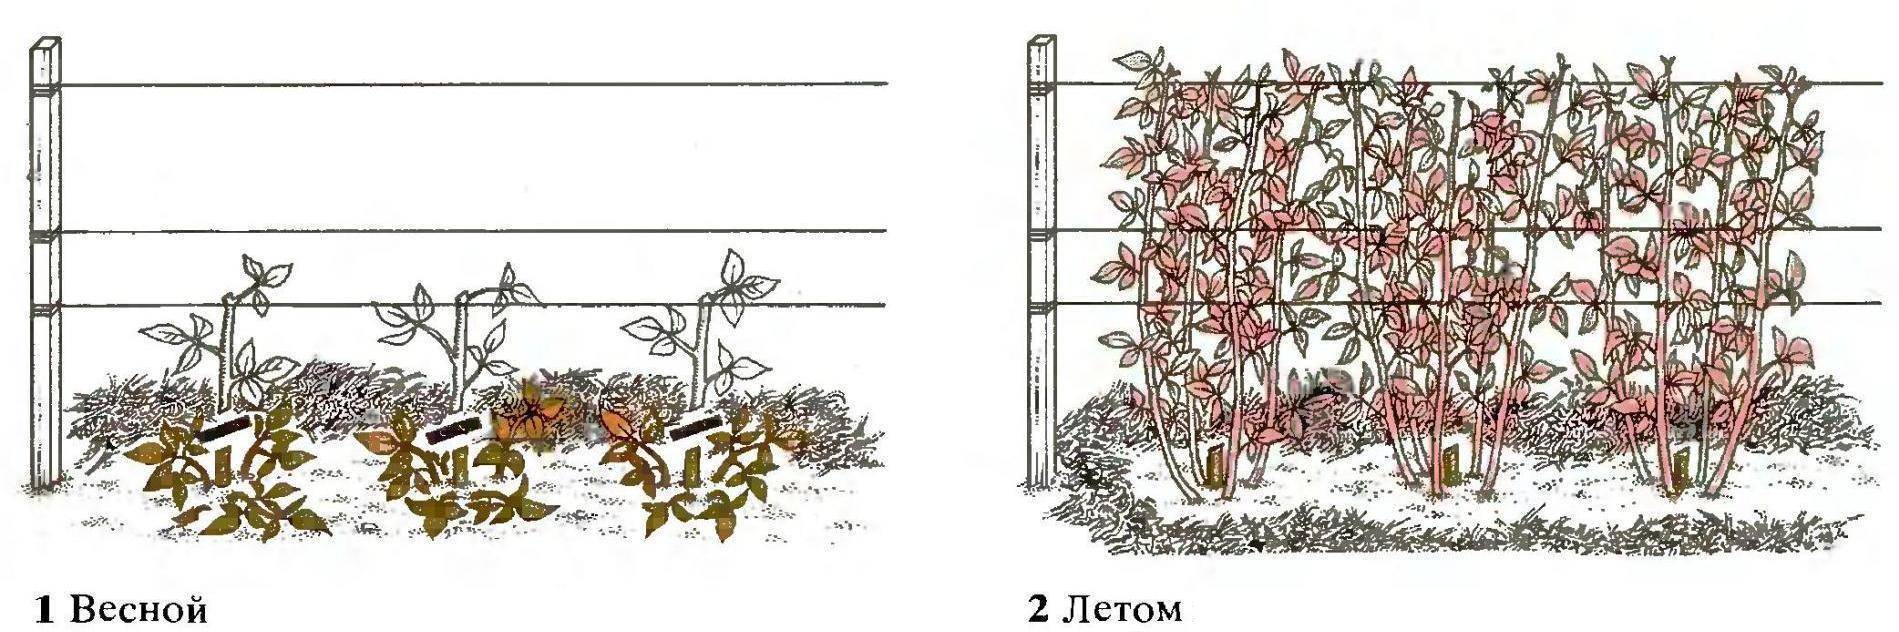 Посадка малины осенью когда и как посадить - пошаговая инструкция. щедрый урожай гарантирован! | красивый дом и сад